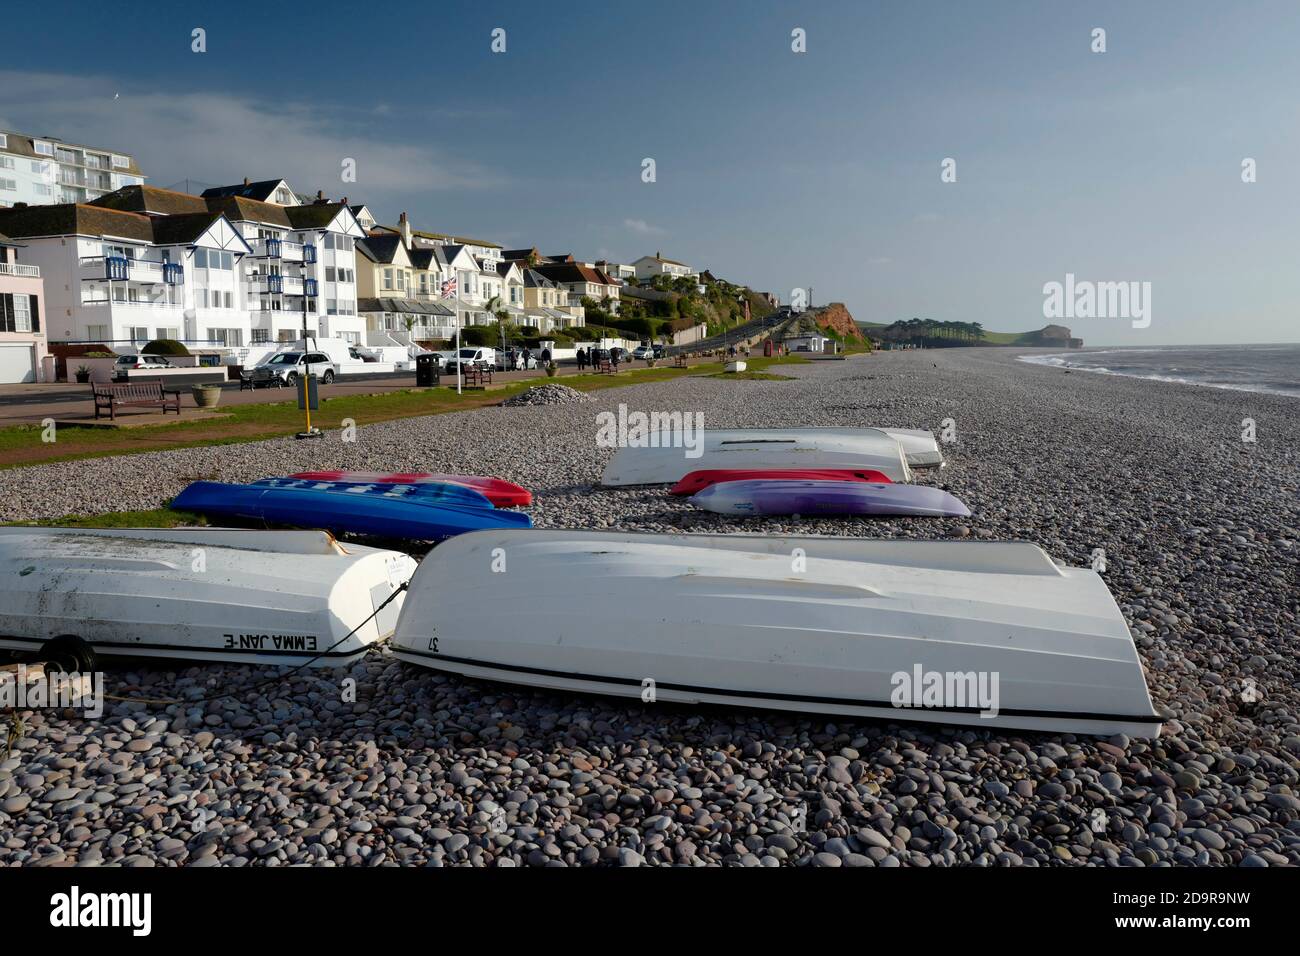 Bateaux sur la plage à Budleigh Salterton, Devon, Royaume-Uni Banque D'Images